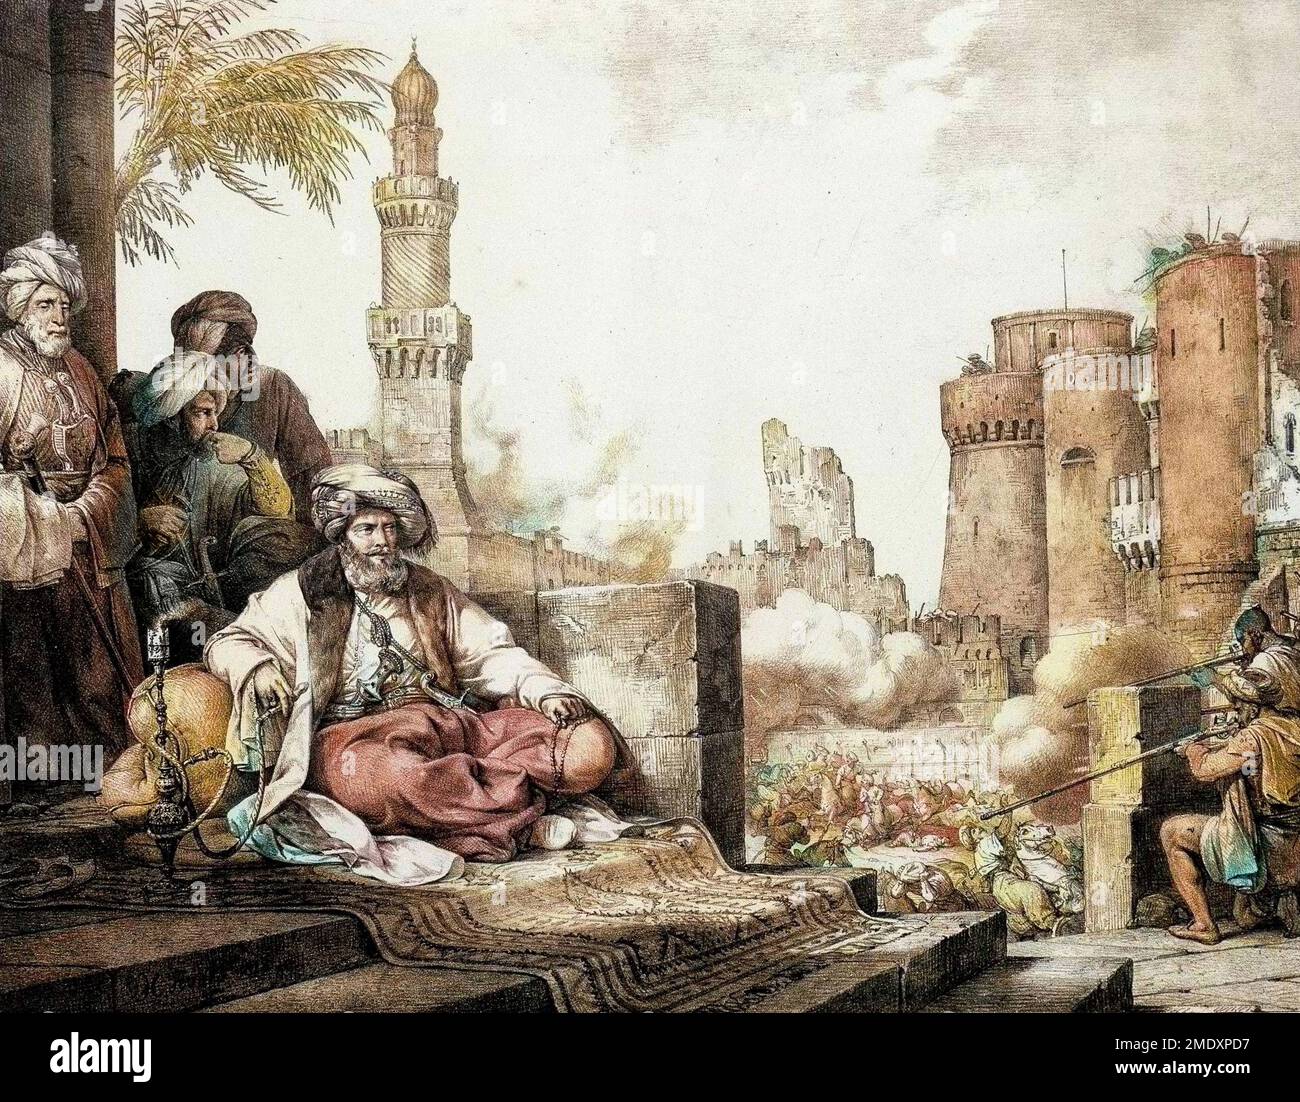 Le massacre des mamelouks rebelles dans le Chateau du Caire en Egypte. Au center se trouve Mohamed Ali ou Mehemet Ali Pasha (1769 - 1849), vice roi d'Egypte. Gravure de 1819. 'Voyage dans le Levant en 1817 - 1818'. Parigi Foto Stock